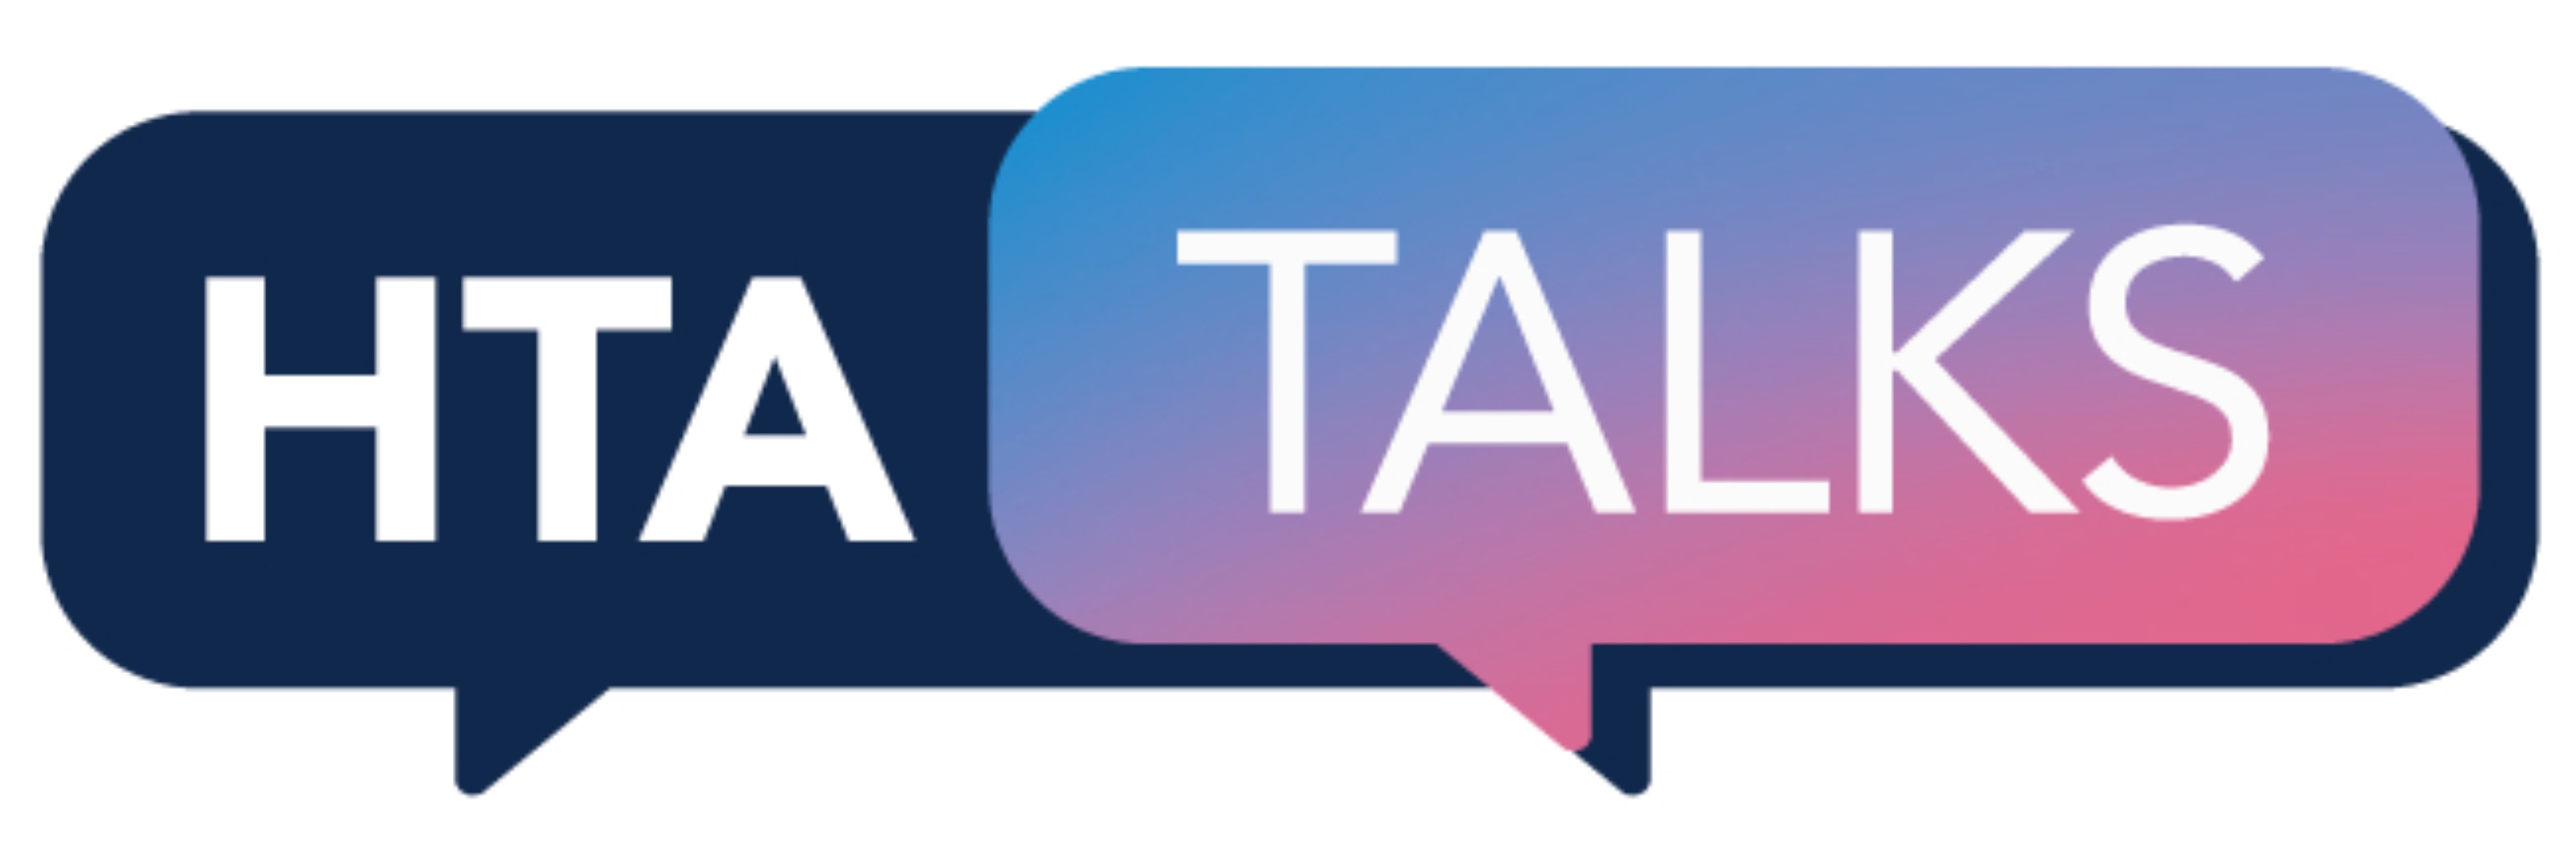 hta-talks-logo